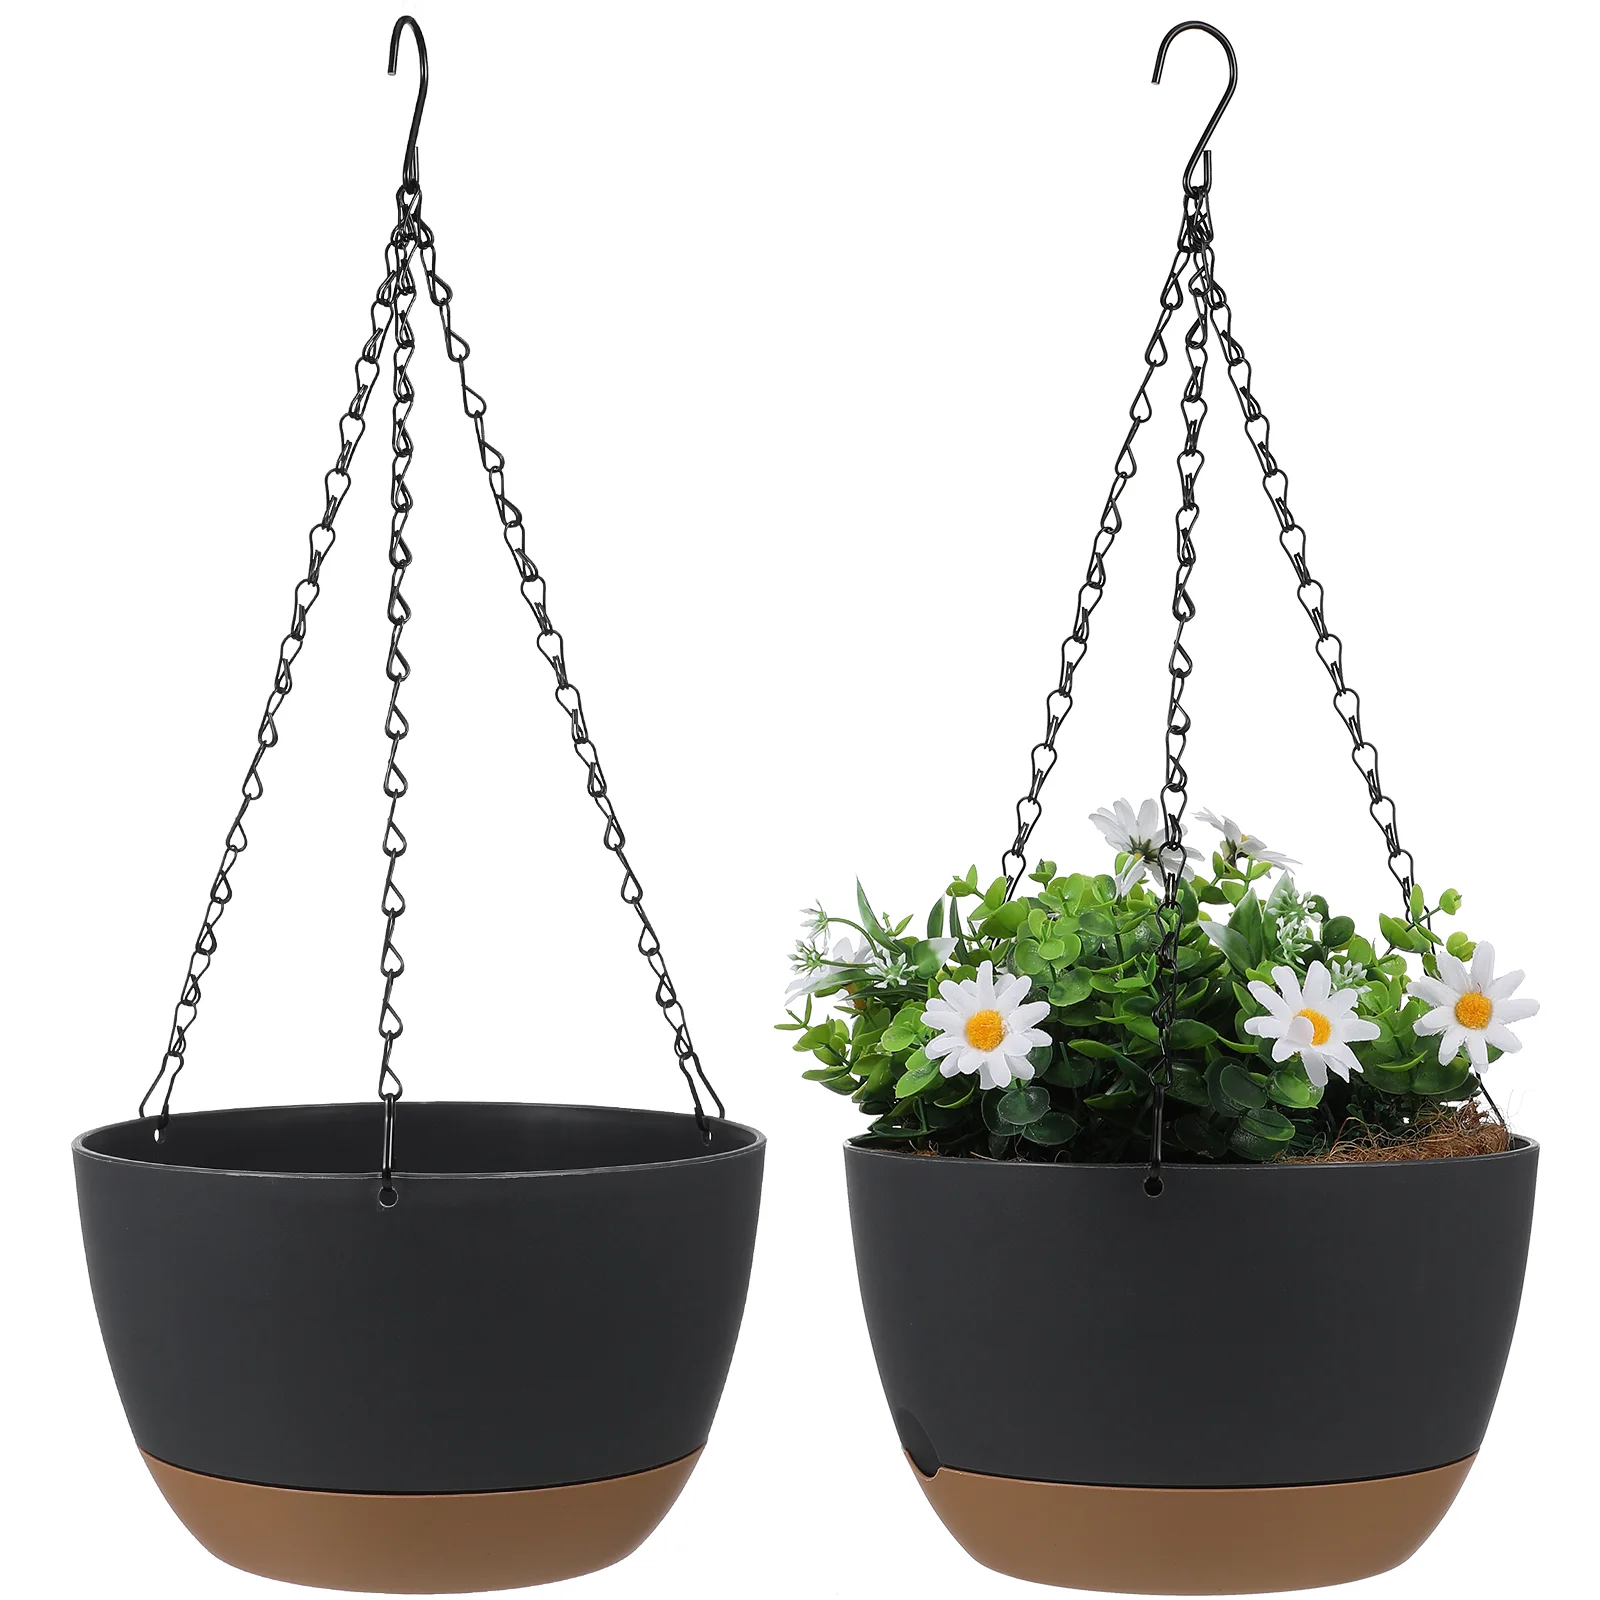 

2 комплекта крючков подвесная корзина цветочный горшок для помещений tum корзины для растений держатель Вешалка